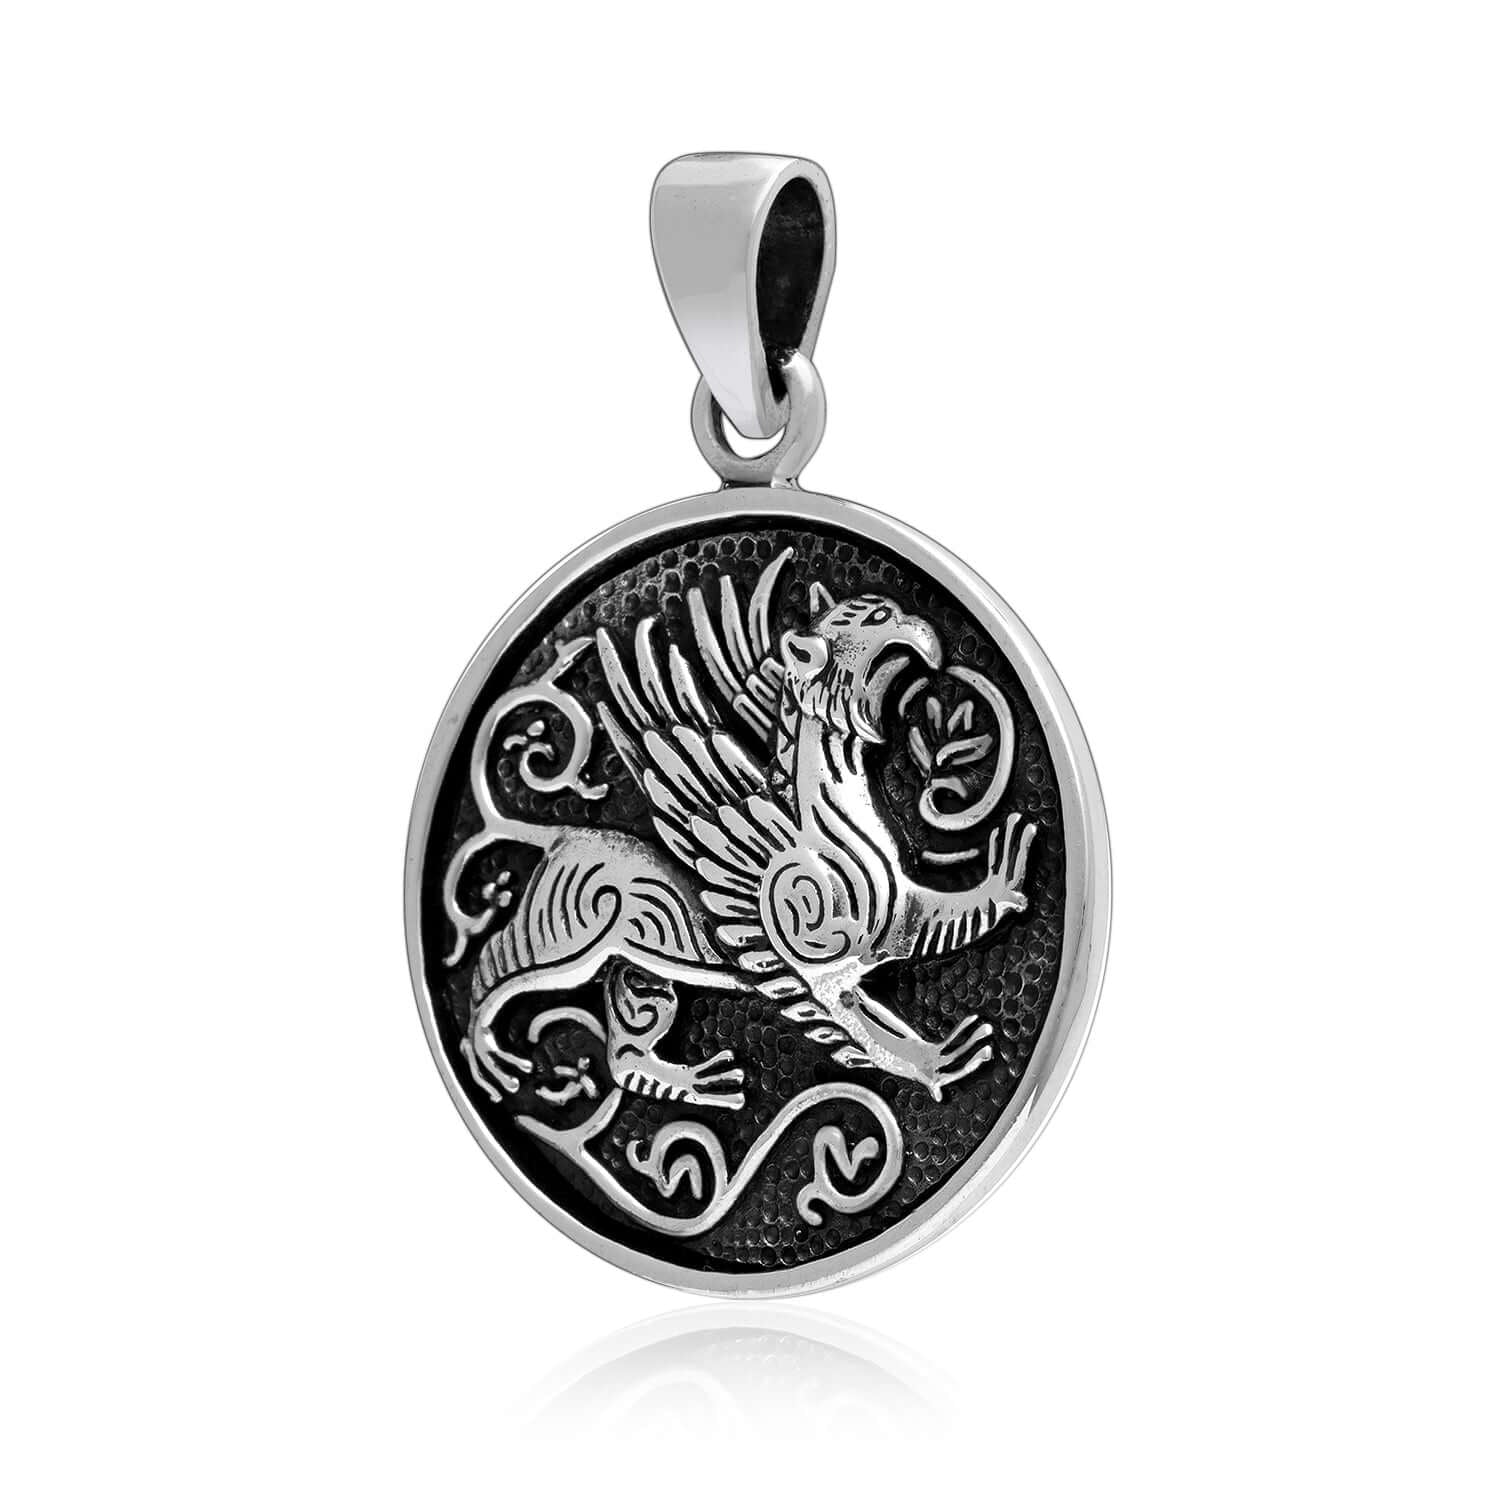 925 Sterling Silver Greek Mythology Griffin Pendant